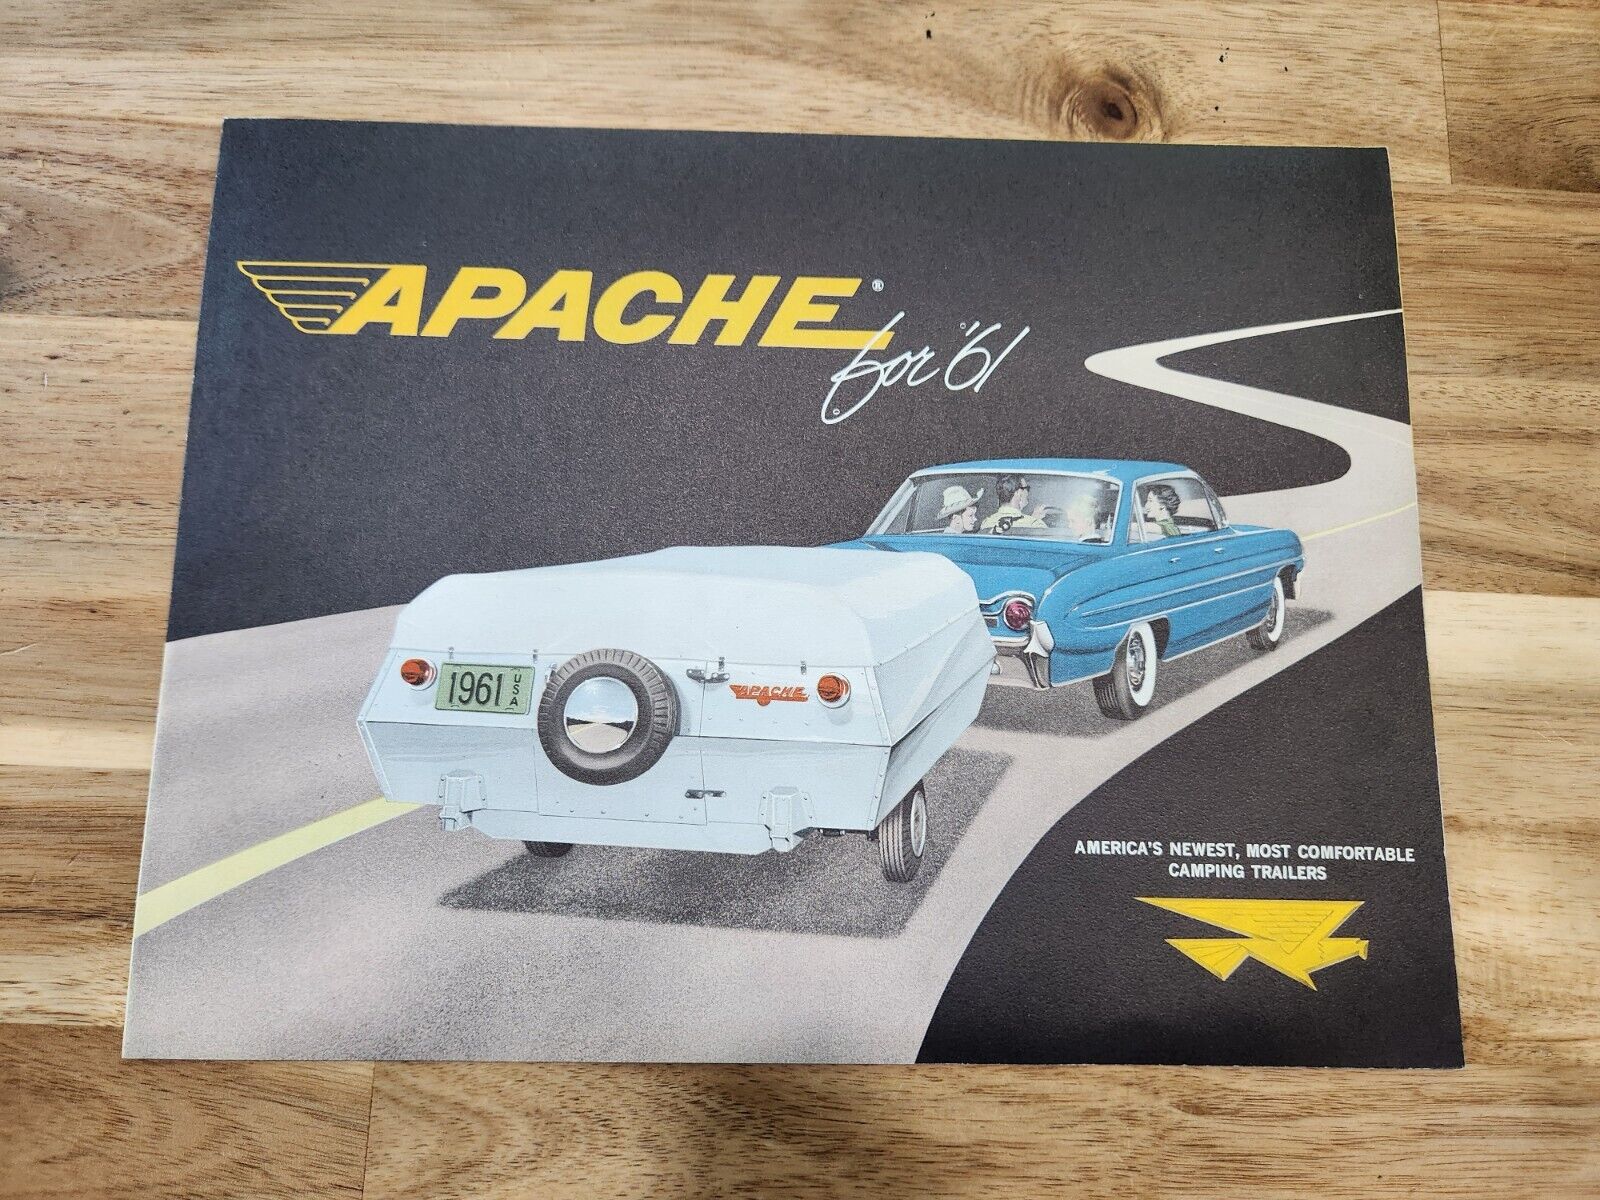 Vintage 1961 Apache Pop Up Trailer Camper Sales Ad Brochure Travel